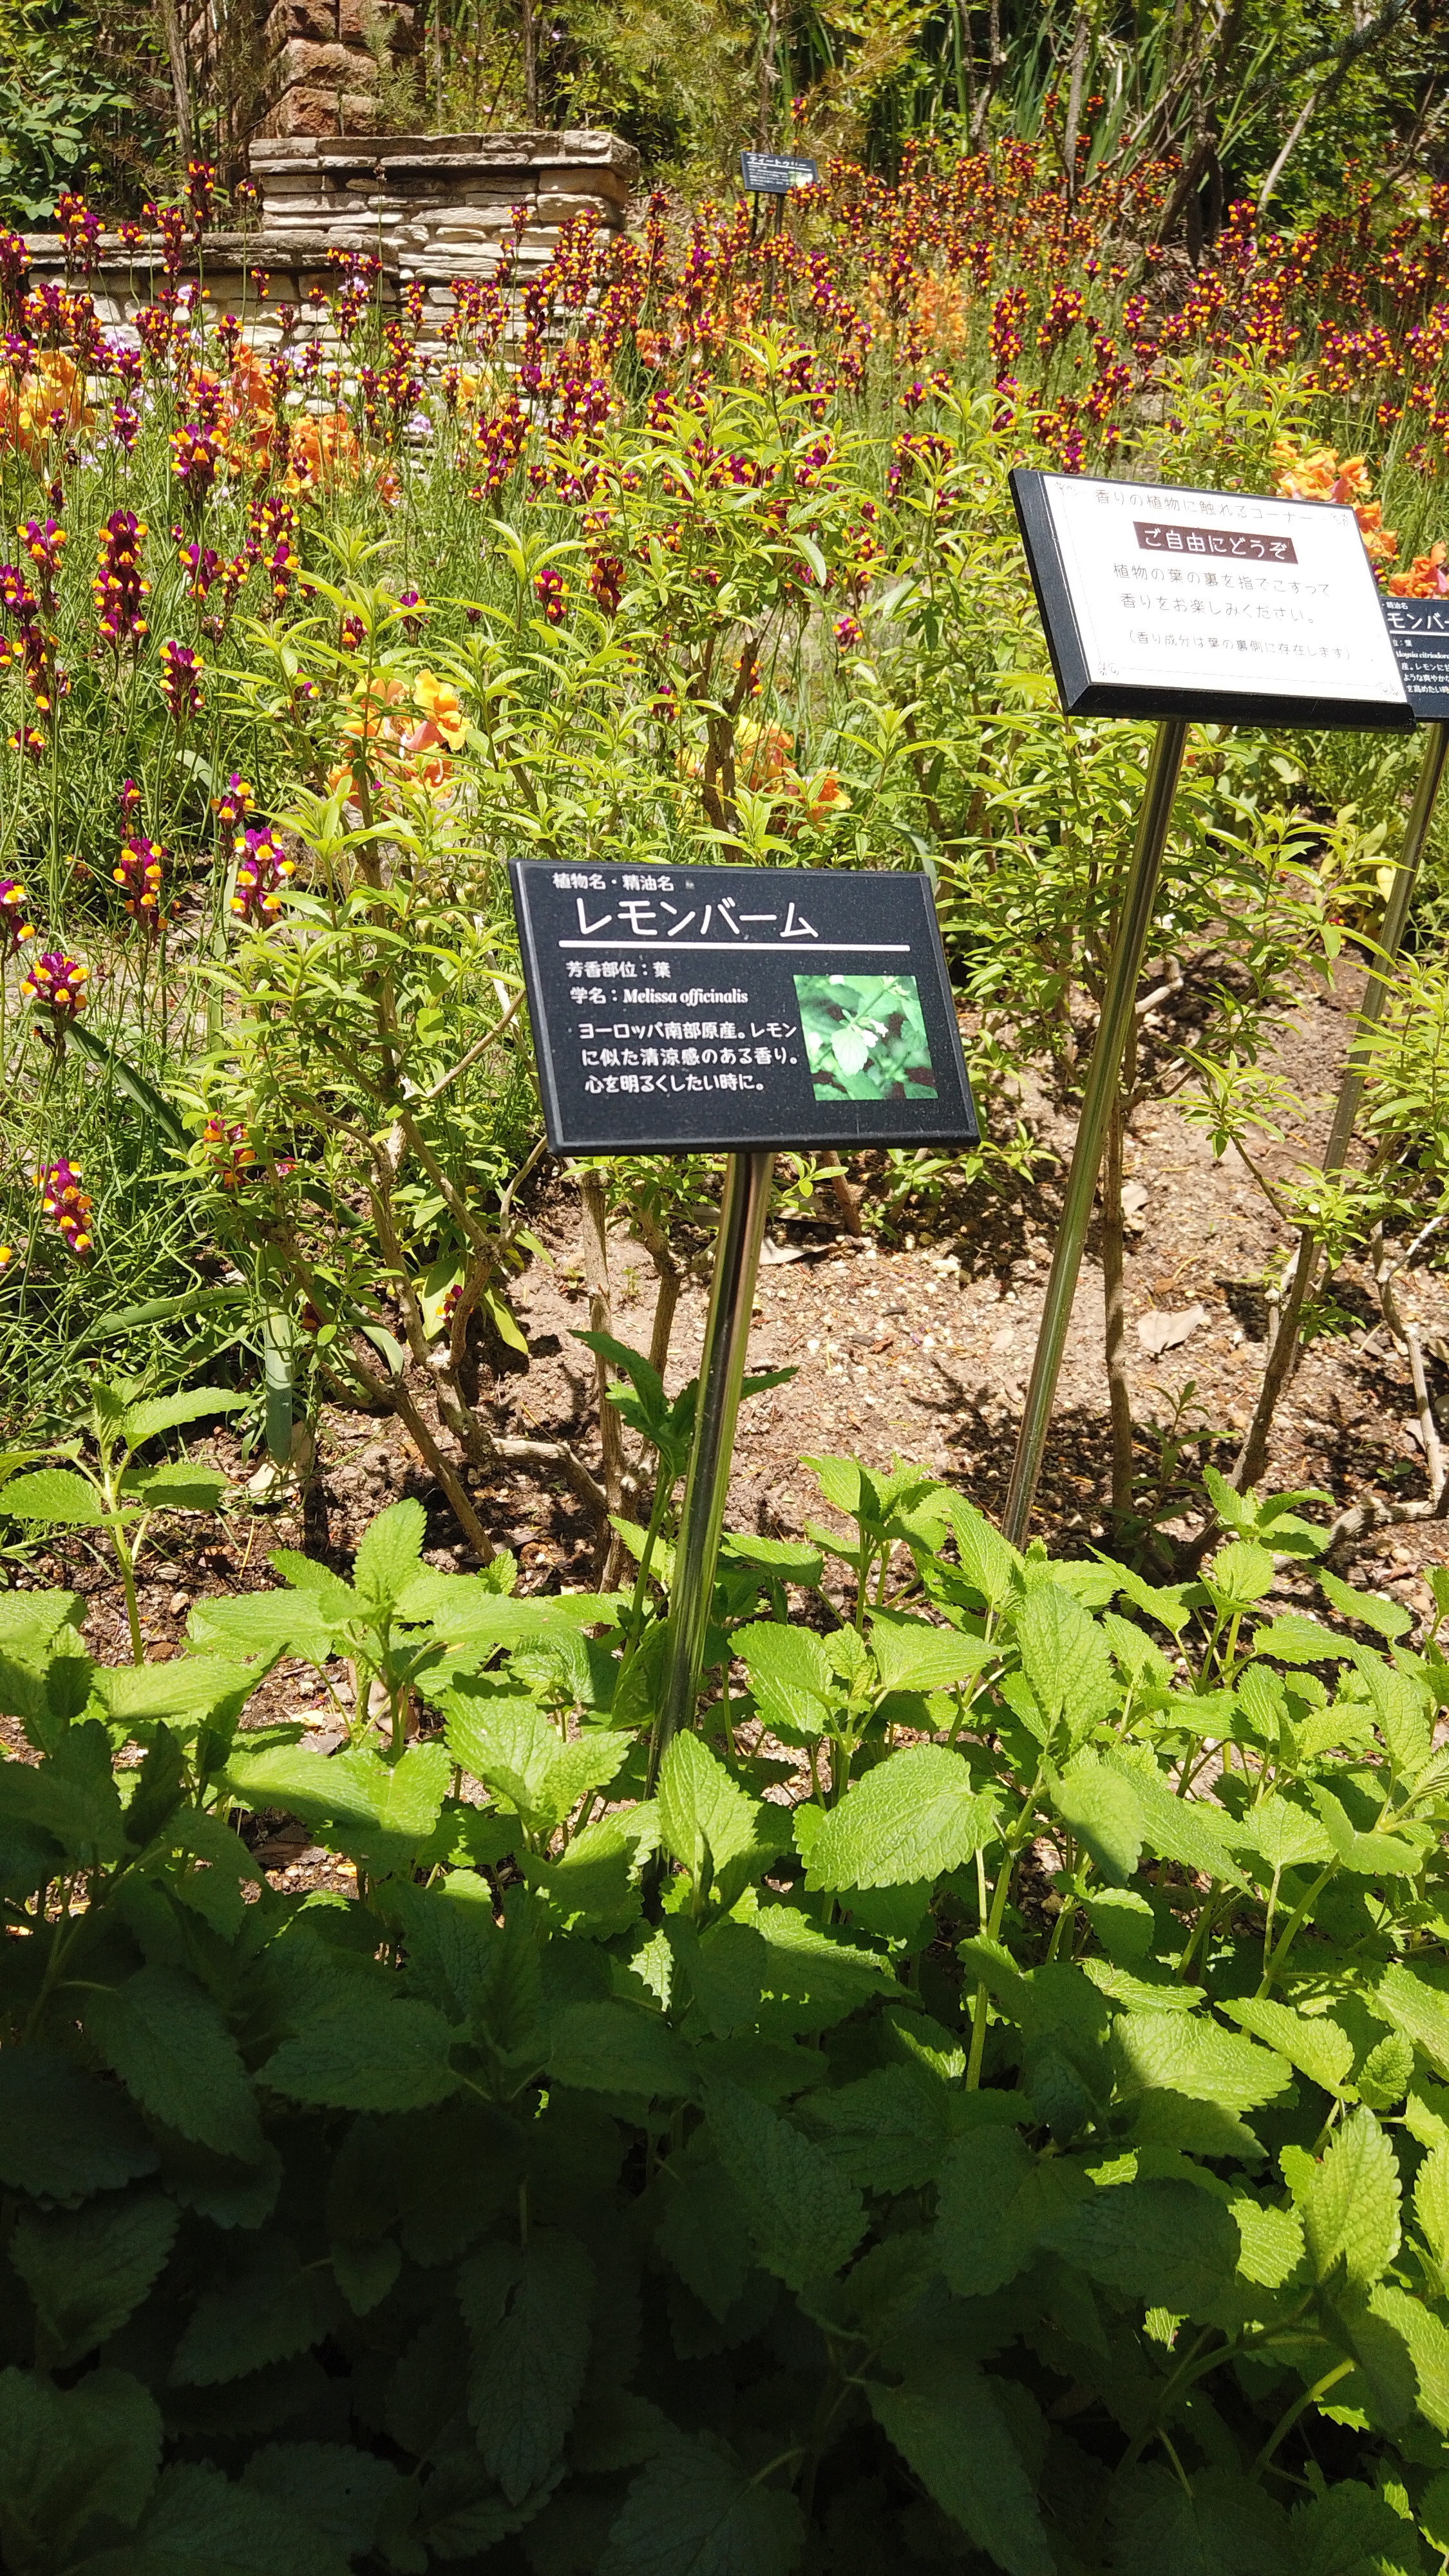 「アロマガーデン」では香りにまつわる植物に触れることができます。 width=